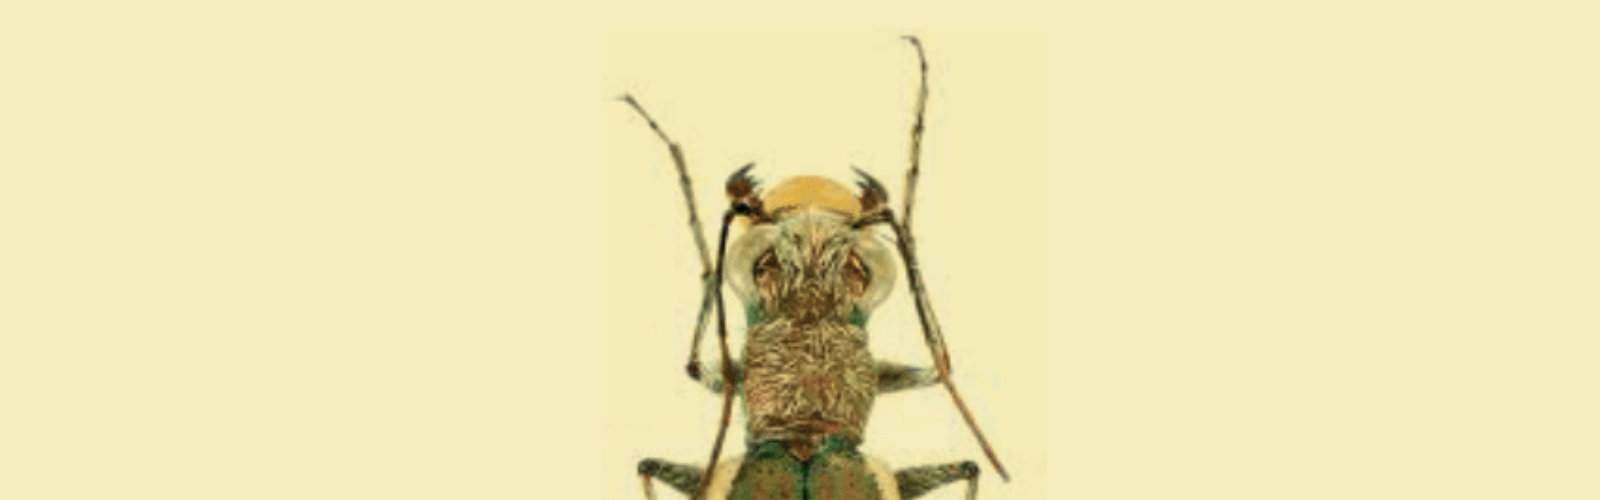 Investigadores de la UMU elaboran un extenso catálogo de 372 especies de escarabajos carábidos presentes en Murcia